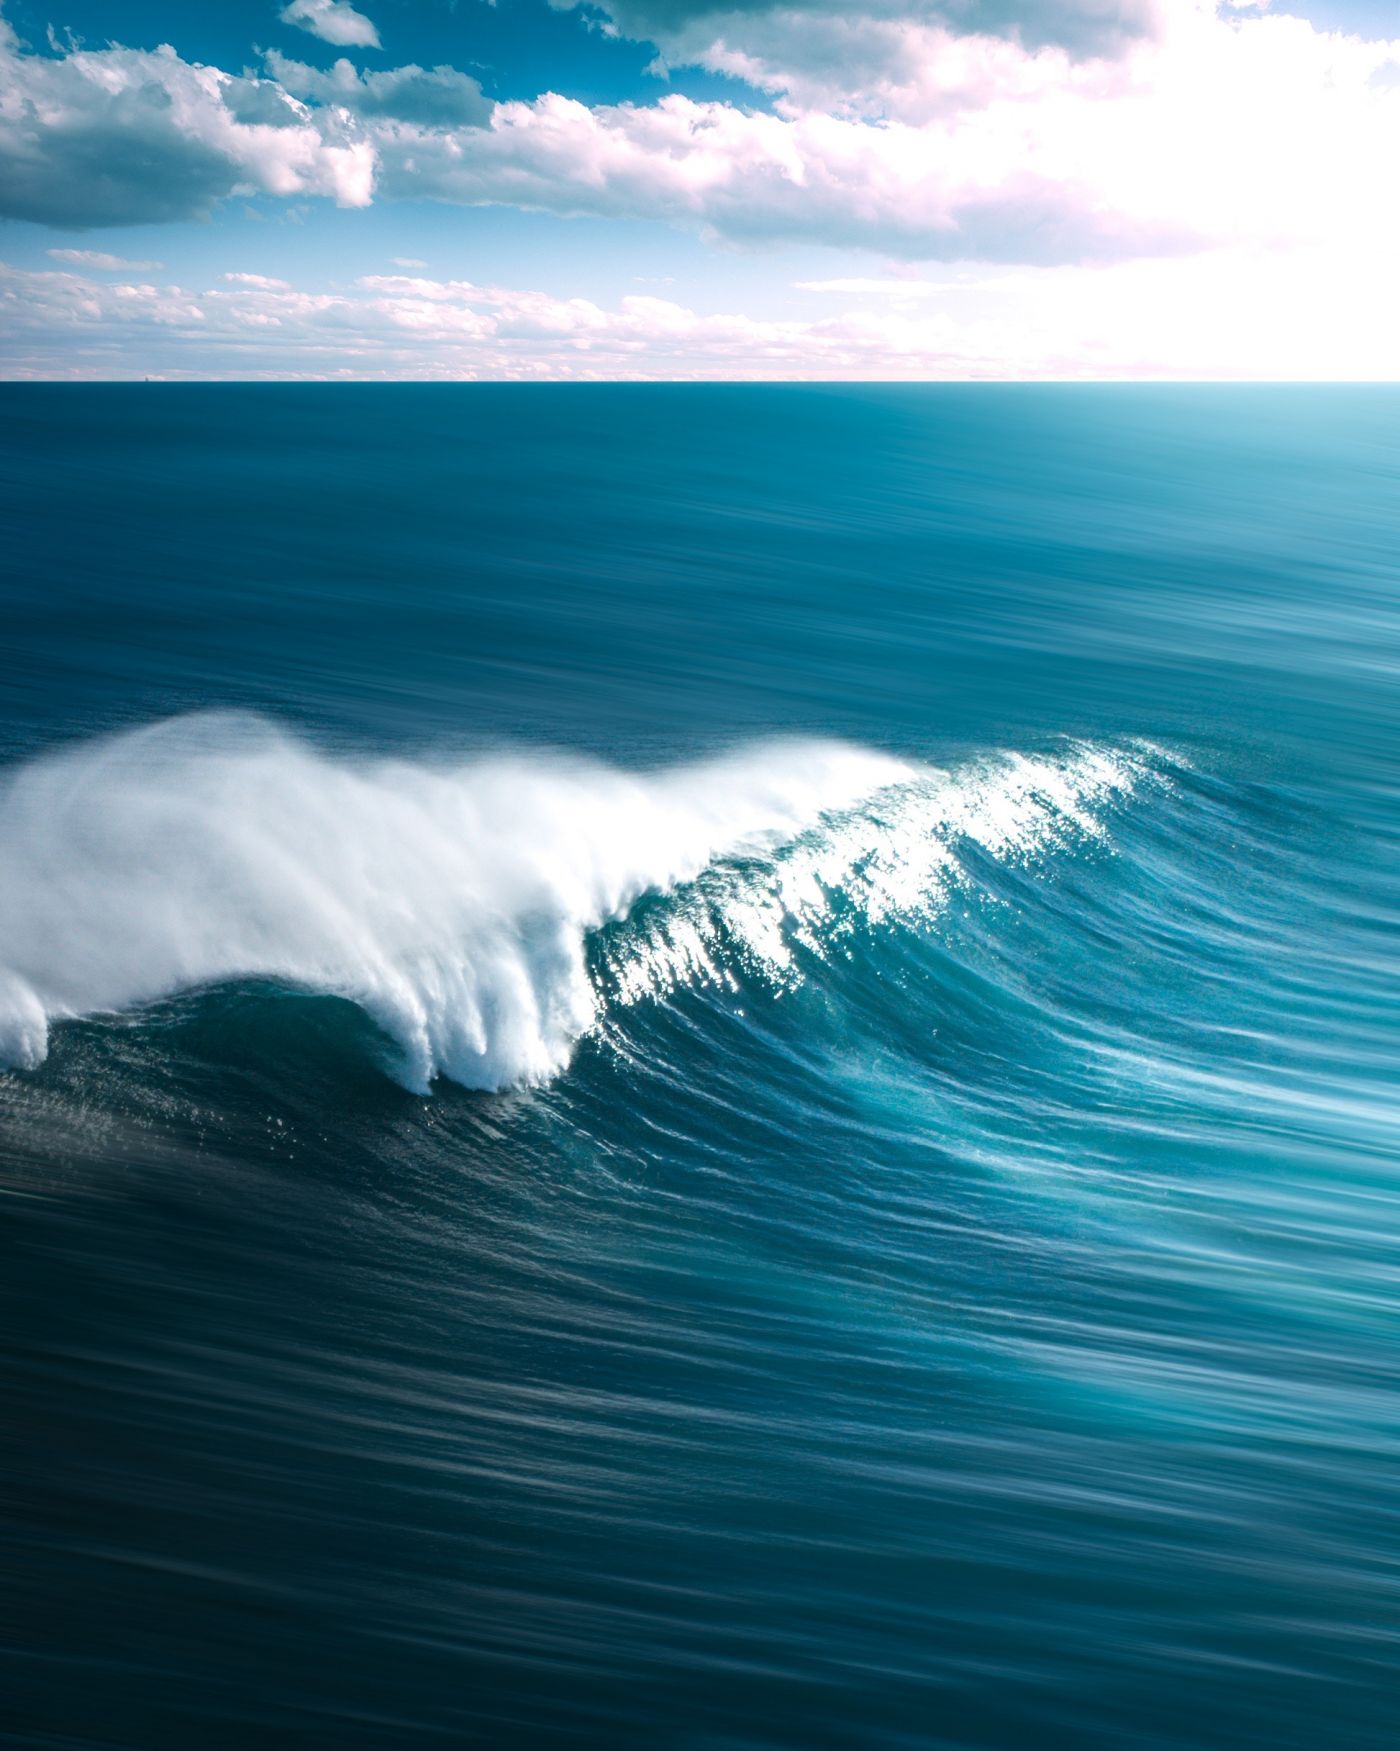 高清晰蓝色大海浪壁纸 欧莱凯设计网 08php Com